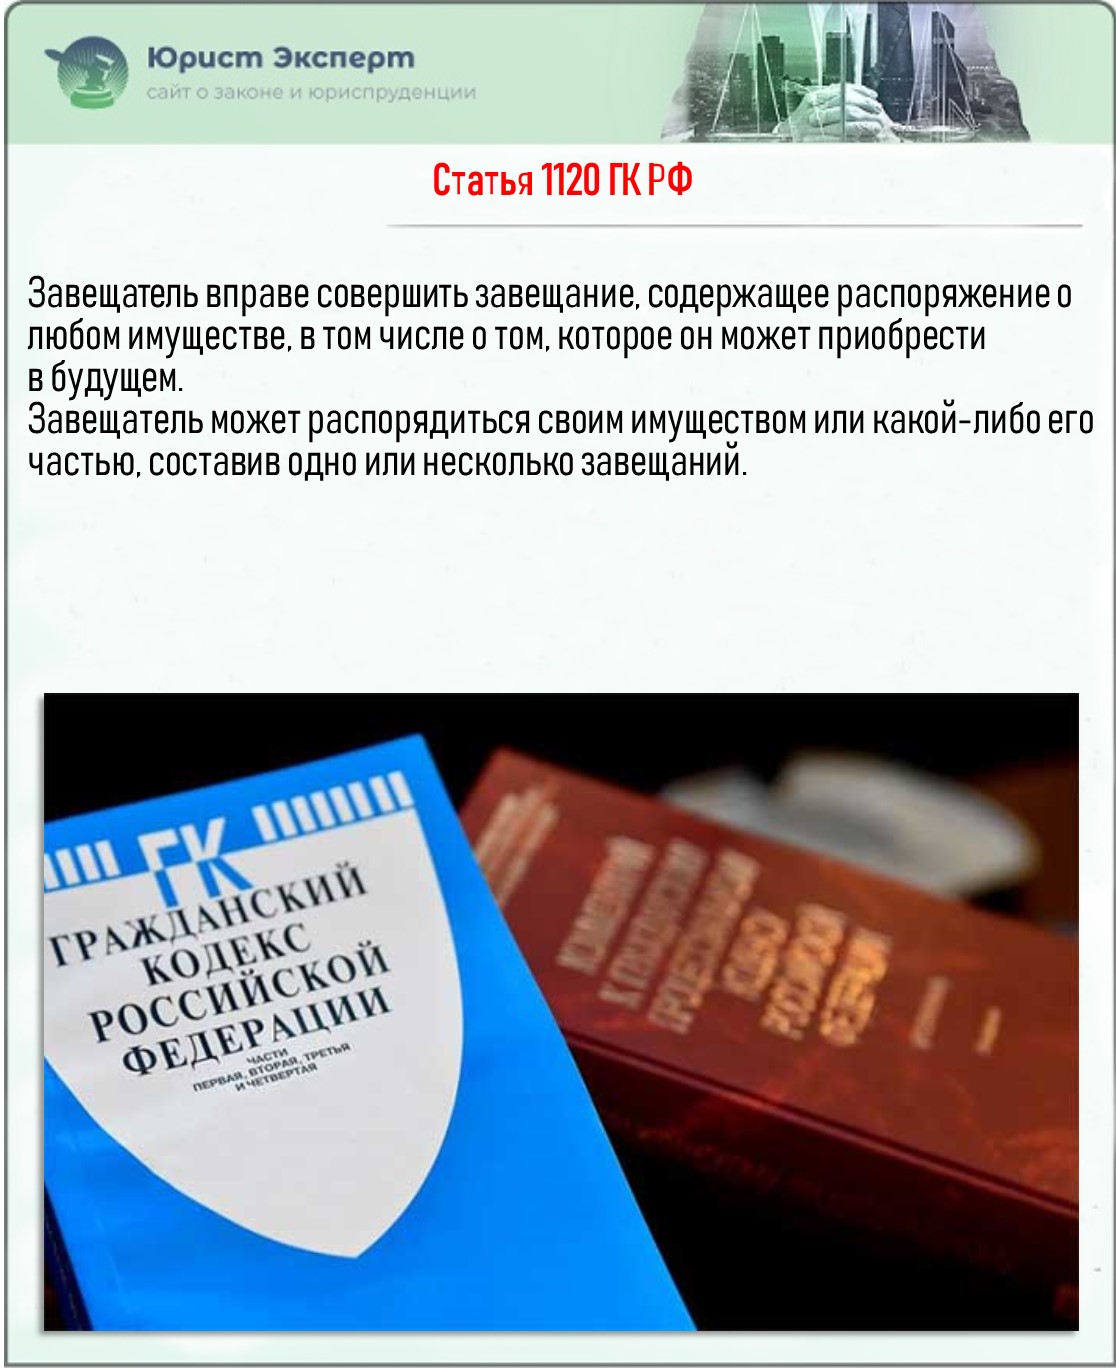 Статья 1120 ГК РФ